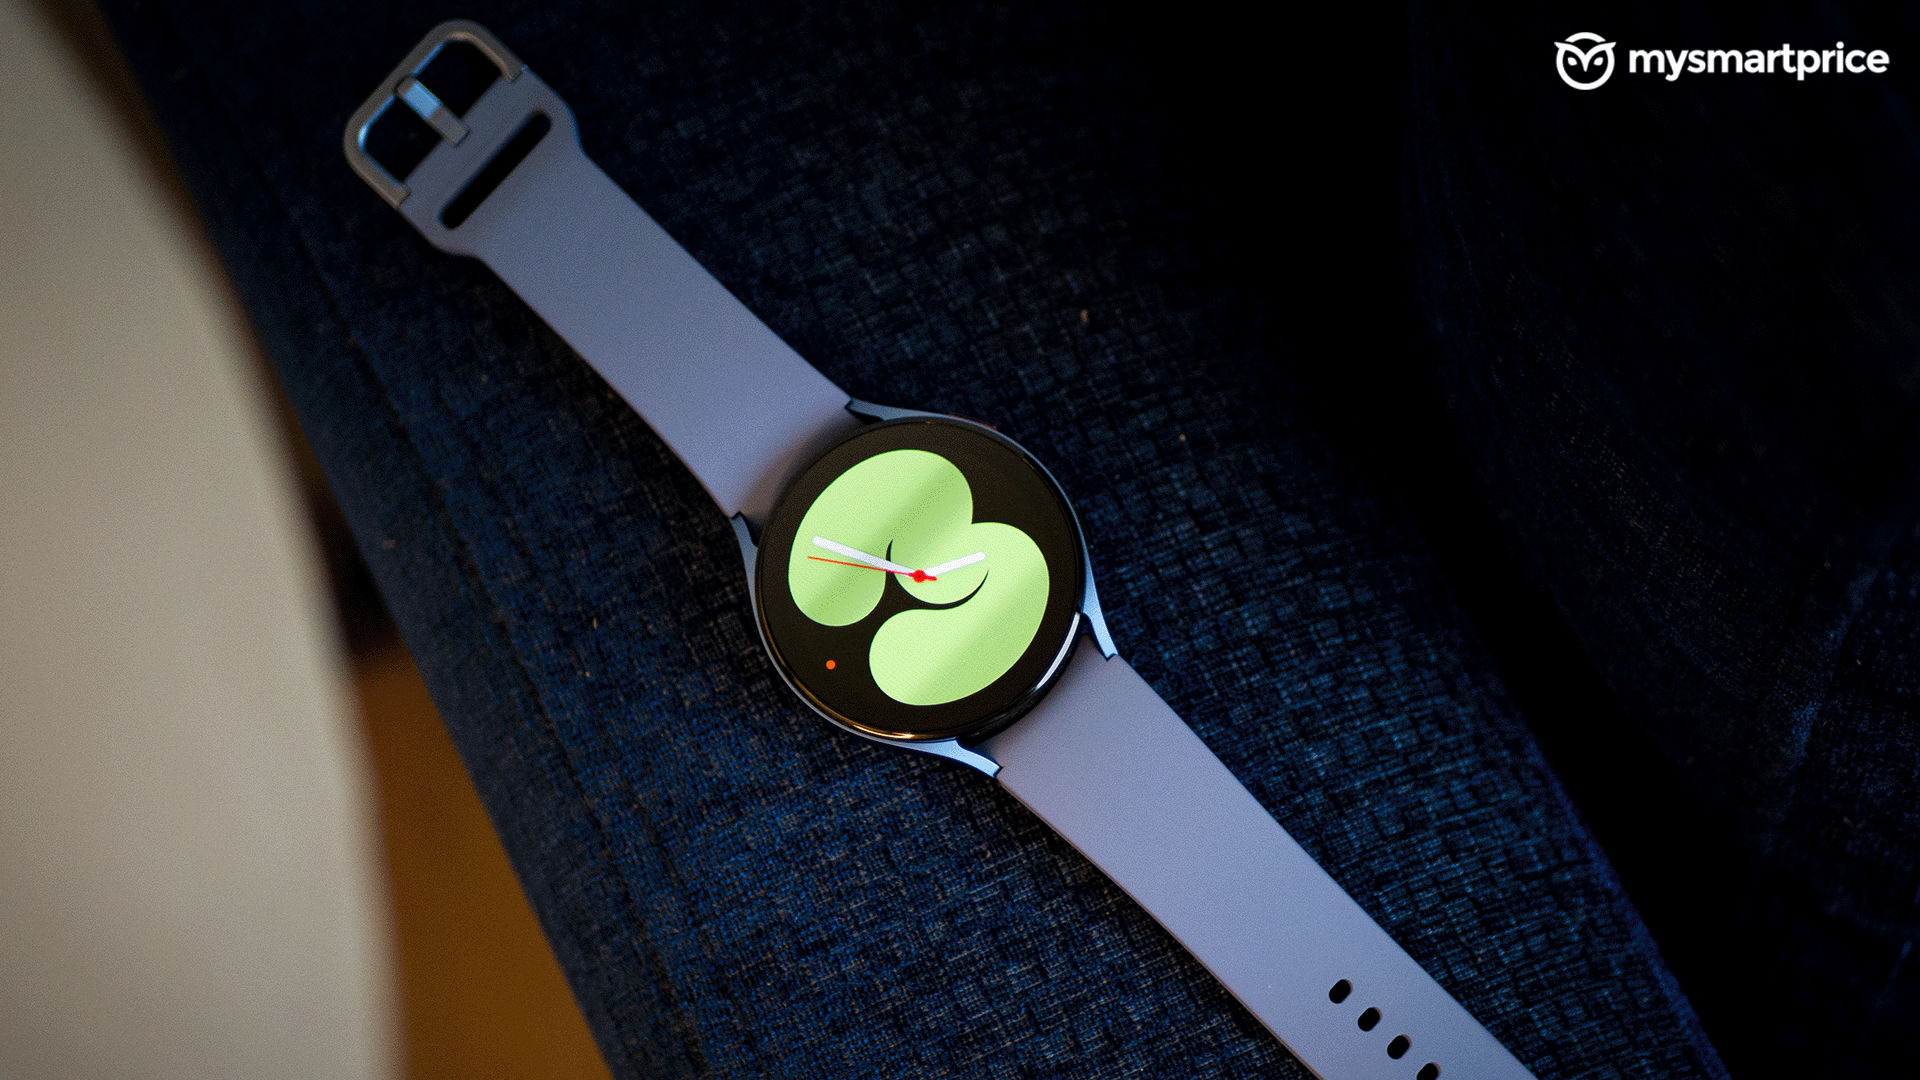 Đánh giá Samsung Galaxy Watch 5 sẽ khiến bạn phải trầm trồ khi khám phá những tính năng tuyệt vời của sản phẩm này. Với thiết kế hoàn hảo, đầy tính năng và hiệu năng mạnh mẽ, Galaxy Watch 5 dễ dàng chiếm trọn trái tim của bạn từ ngay lần đầu tiên sử dụng. Hãy xem hình ảnh để cảm nhận sự hoàn hảo của sản phẩm!